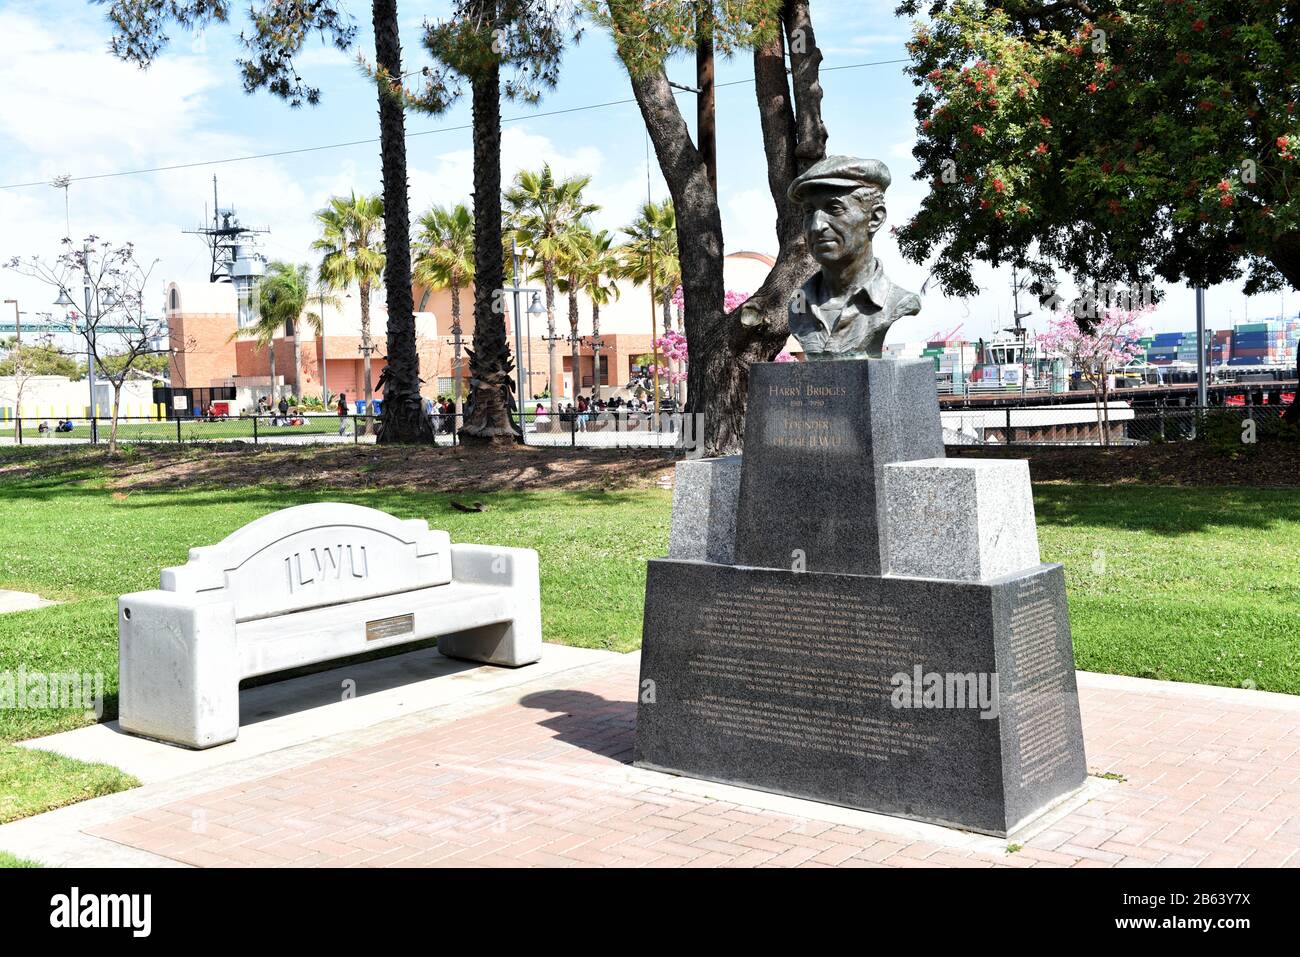 San PEDRO, CALIFORNIE - 06 MARS 2020: Statue de Harry Bridges fondateur de l'International Longshore and Warehouse Union (ILWU). Banque D'Images